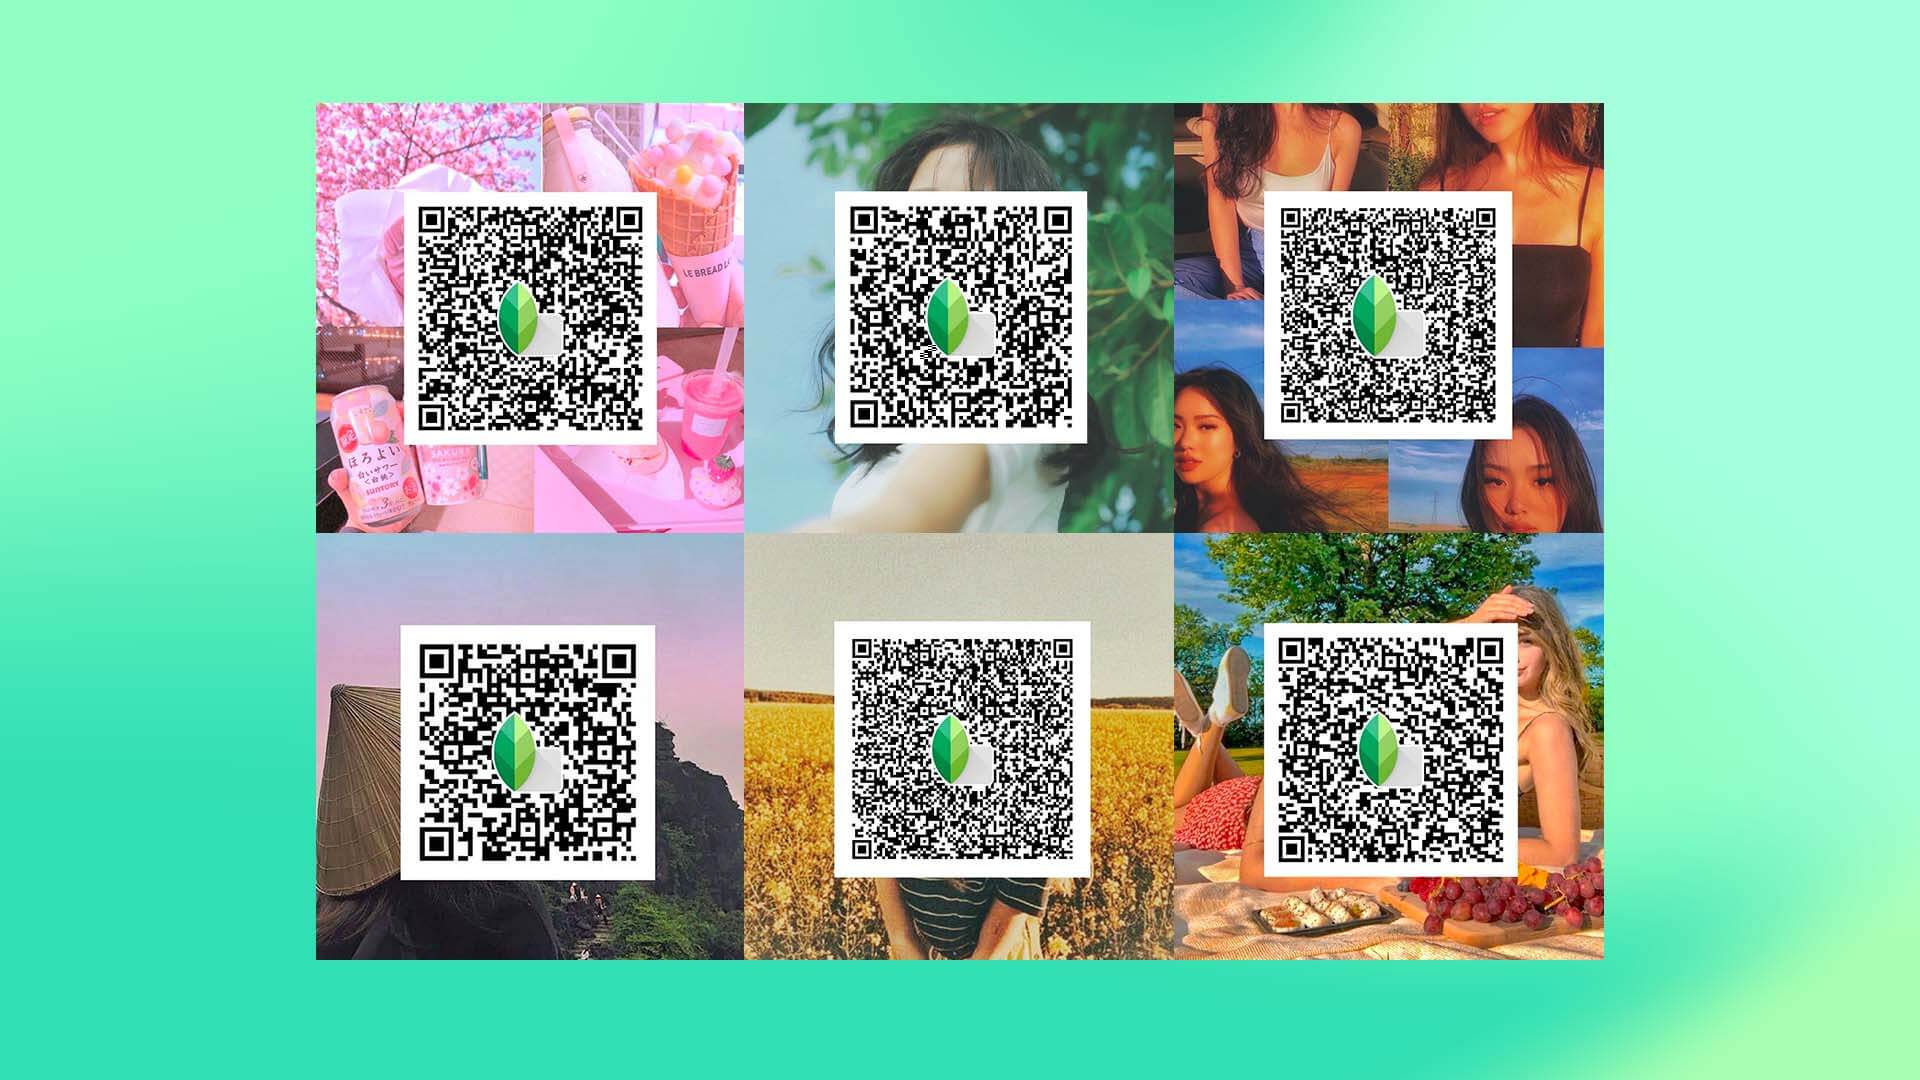 Hướng dẫn cách sử dụng Snapseed qr codes green background Đơn giản nhất